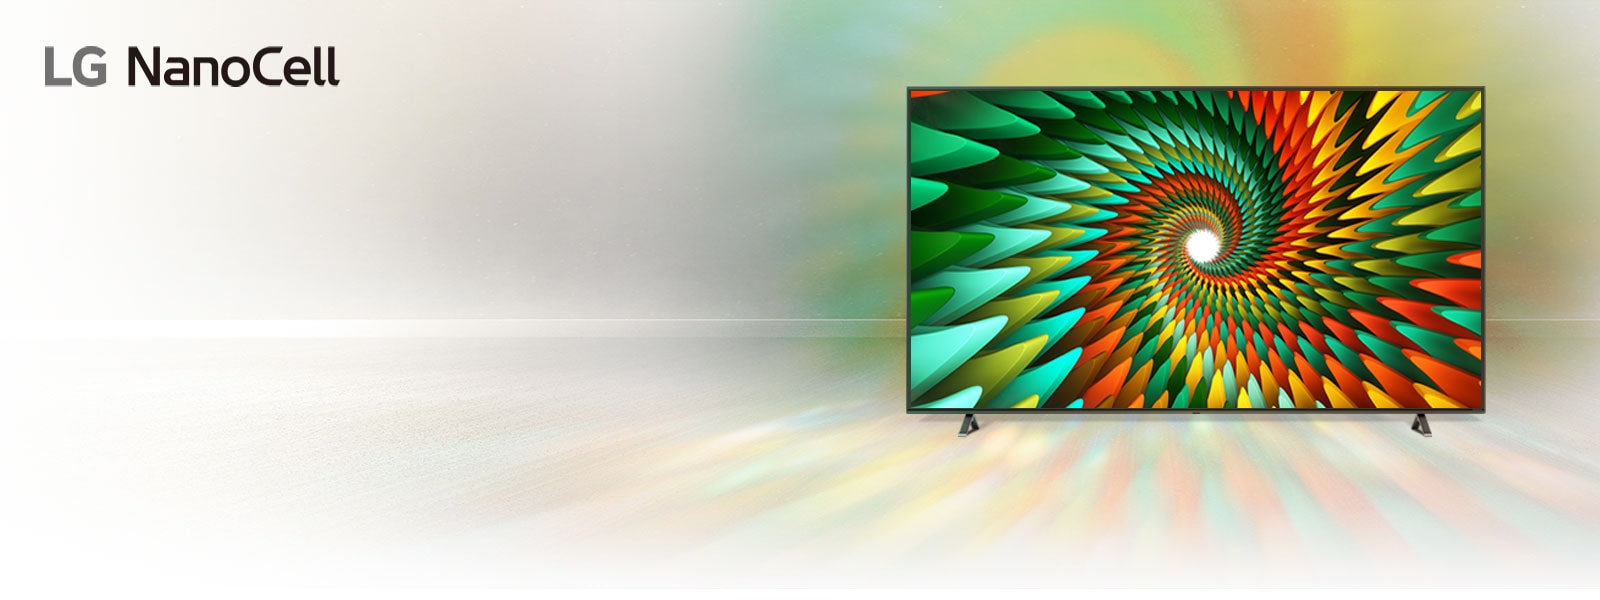 Televizors neitrāla fona istabā ar krāsainu spirāles formu uz ekrāna.